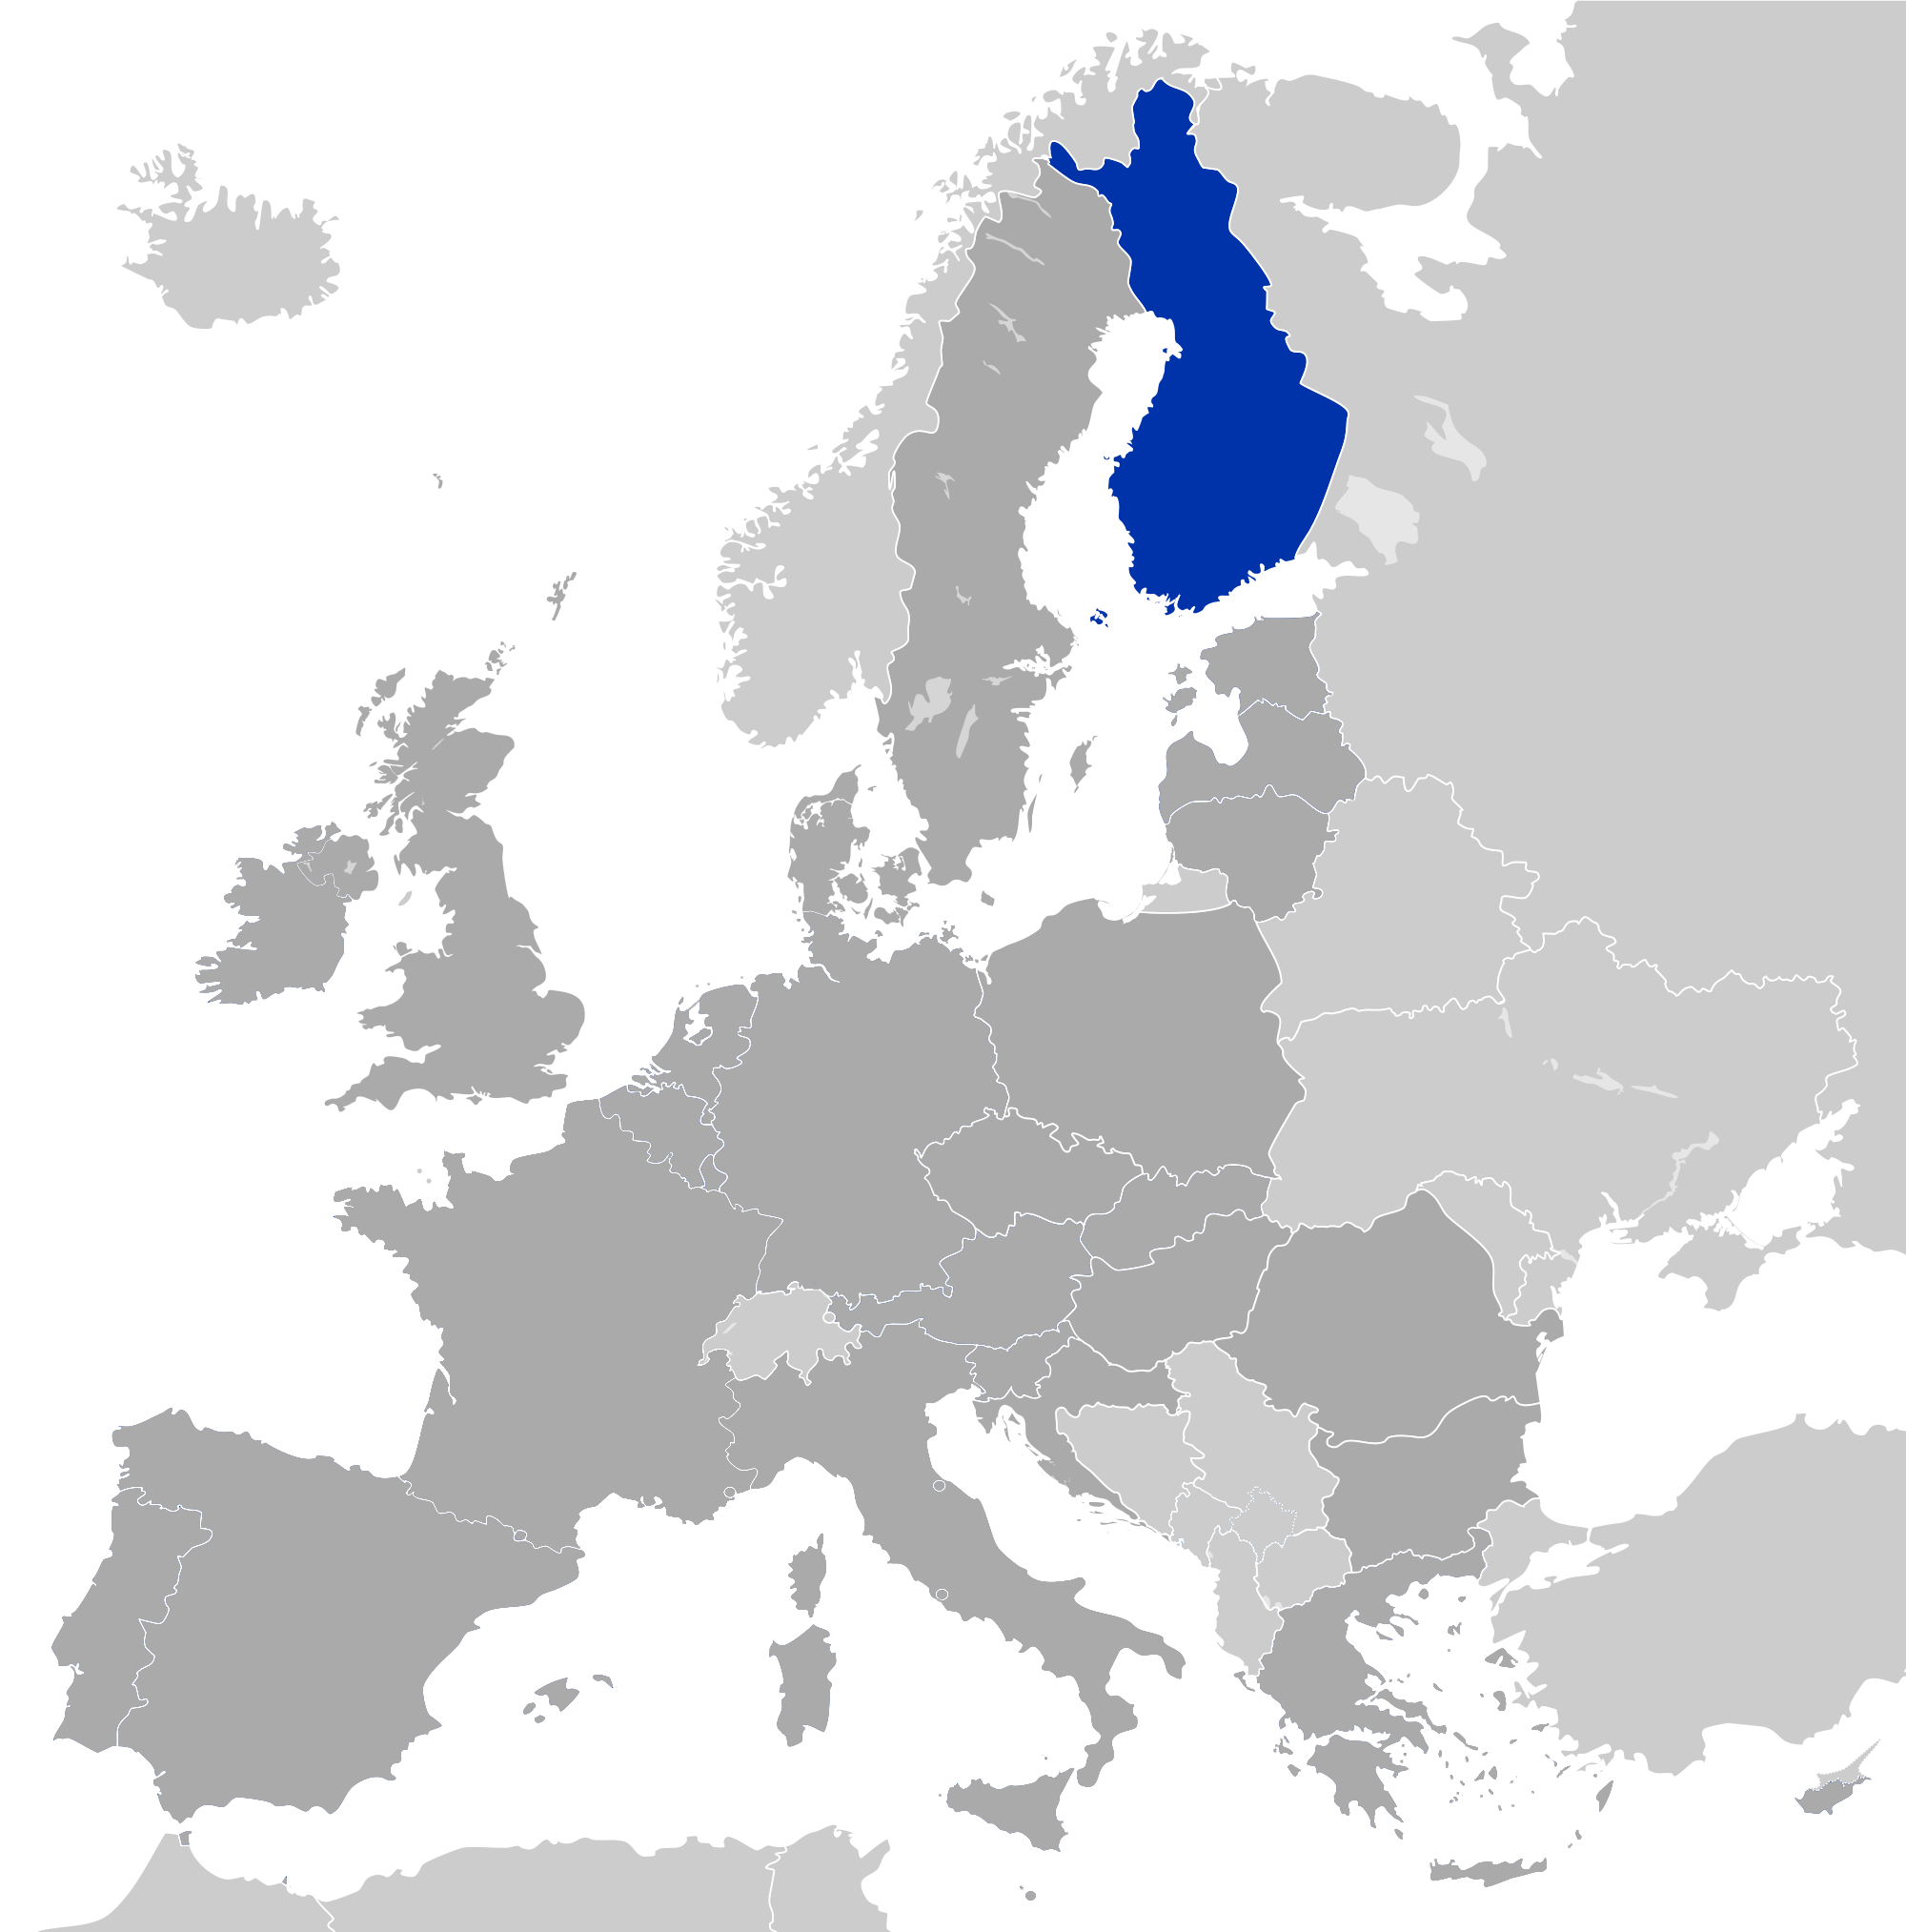 Finland in the eurozone